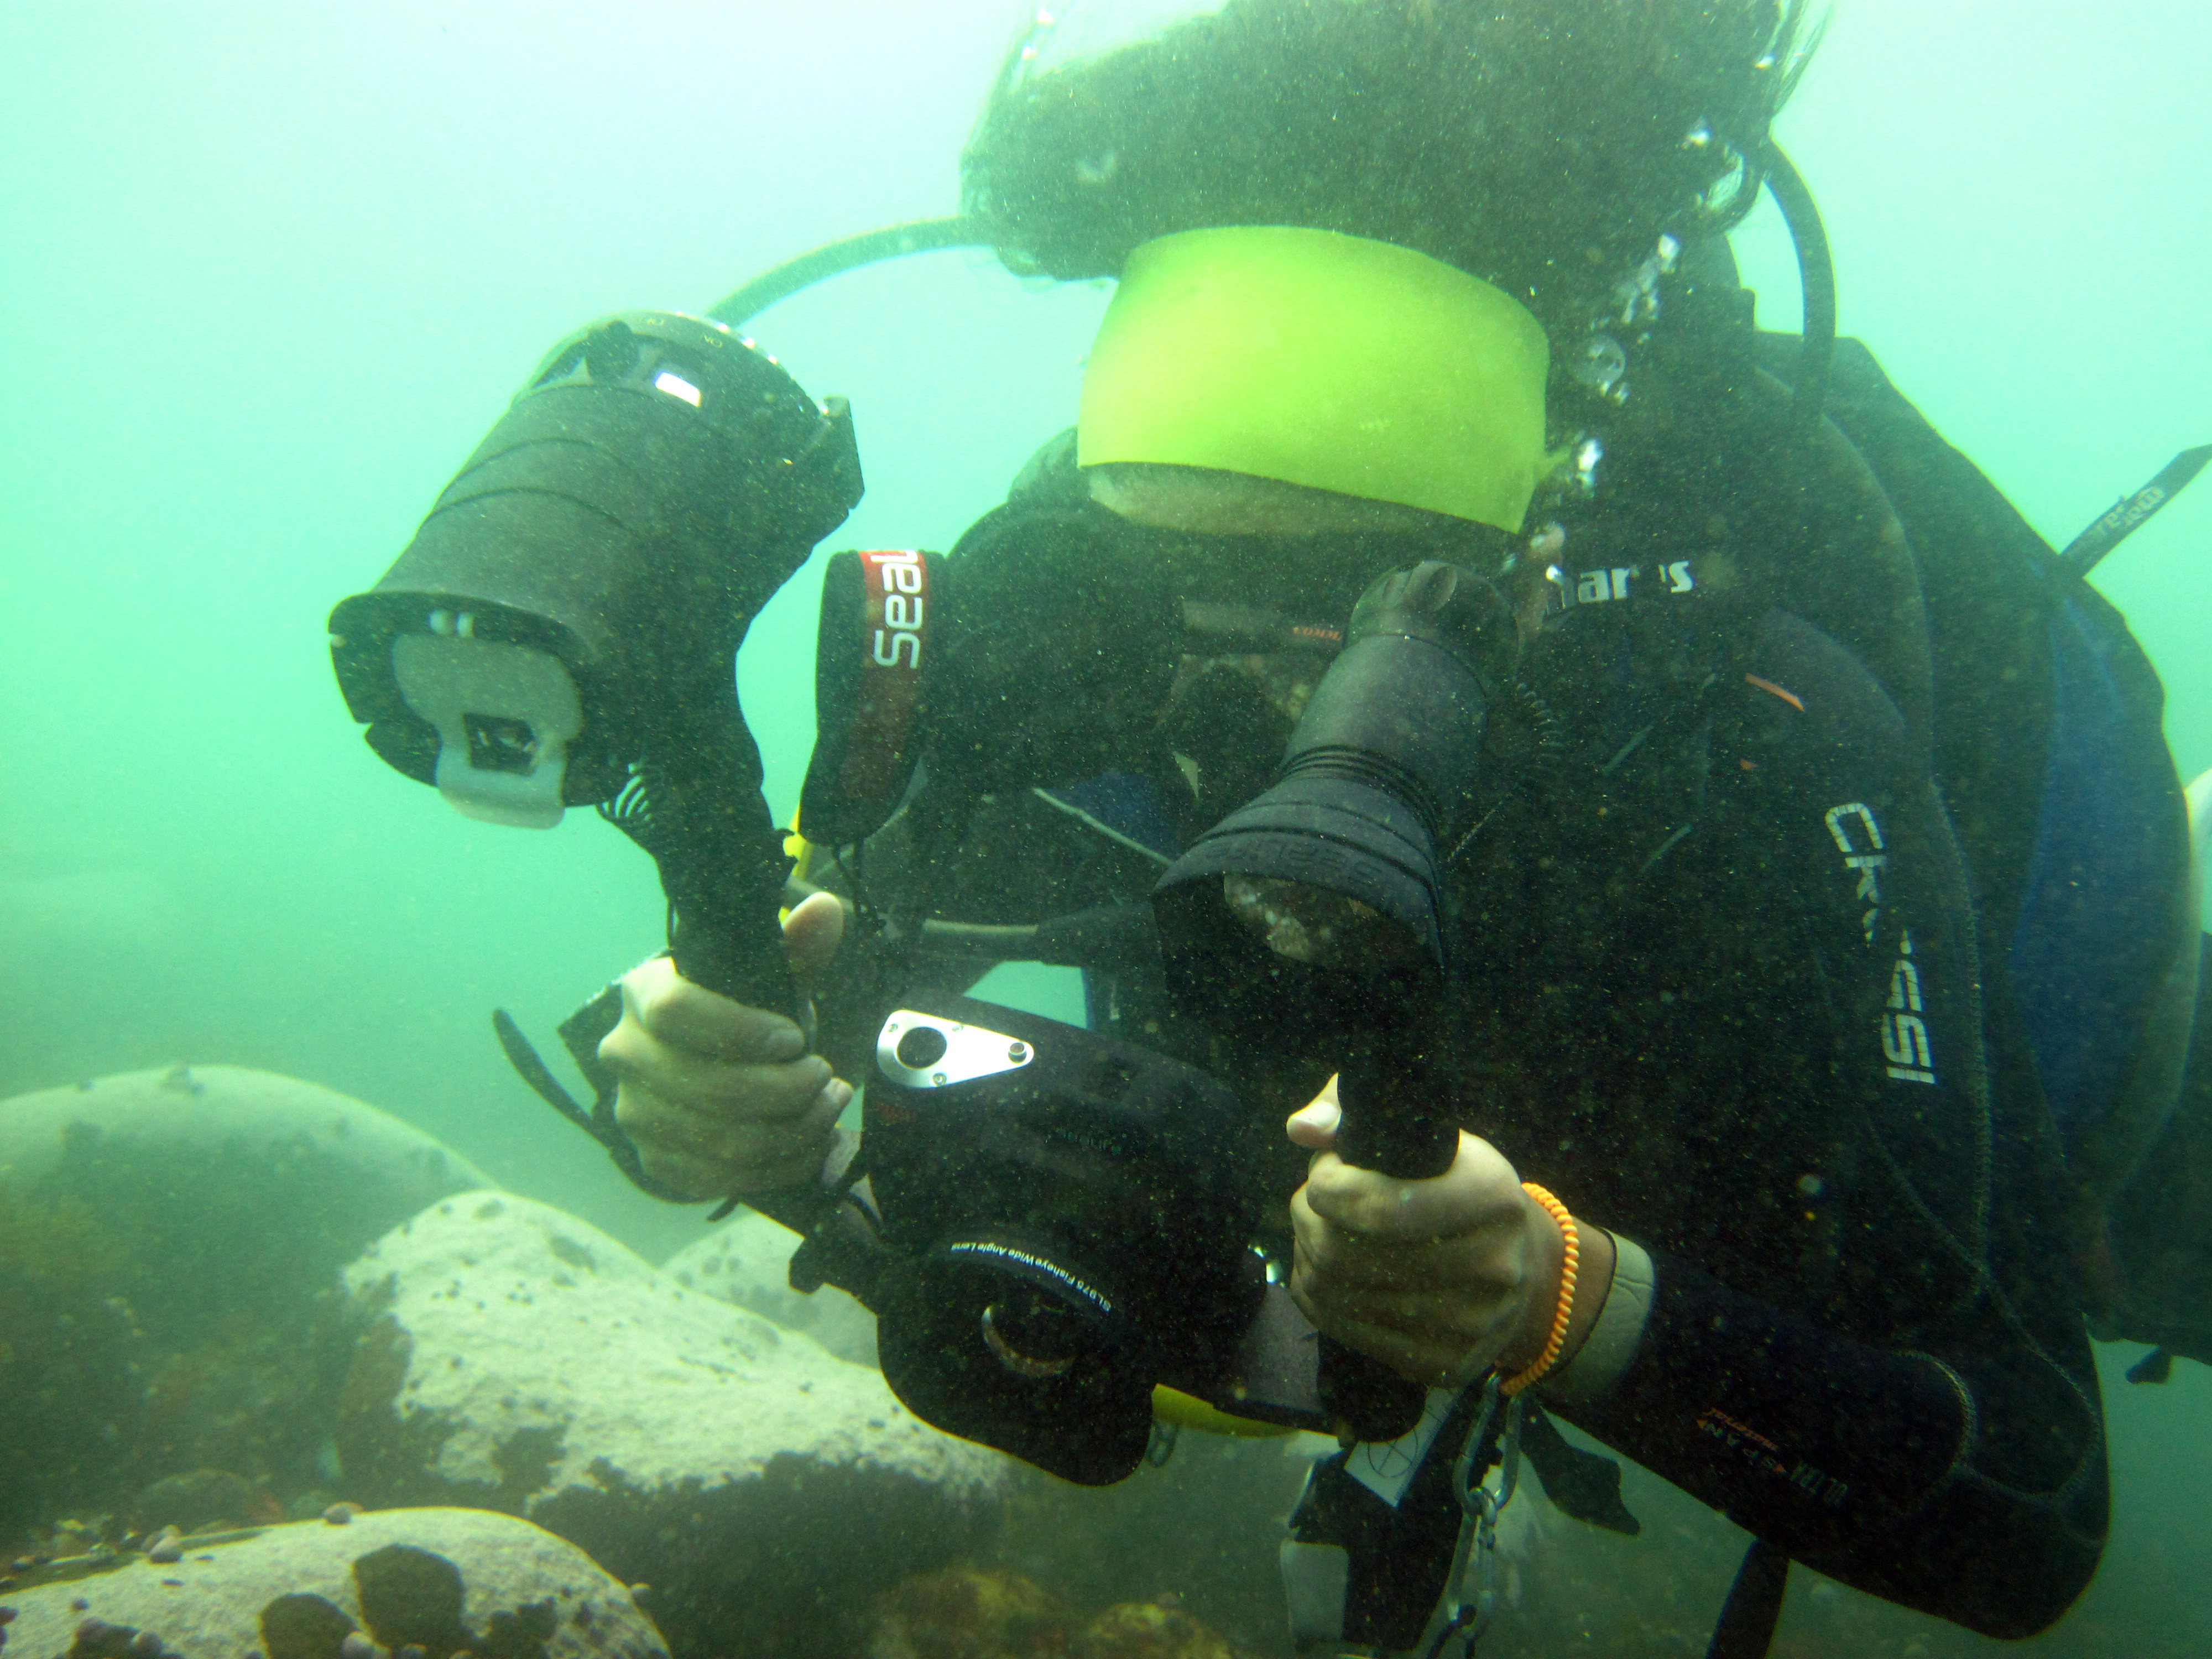 registro subacuático de un fragmento de cerámica en el fondo marino